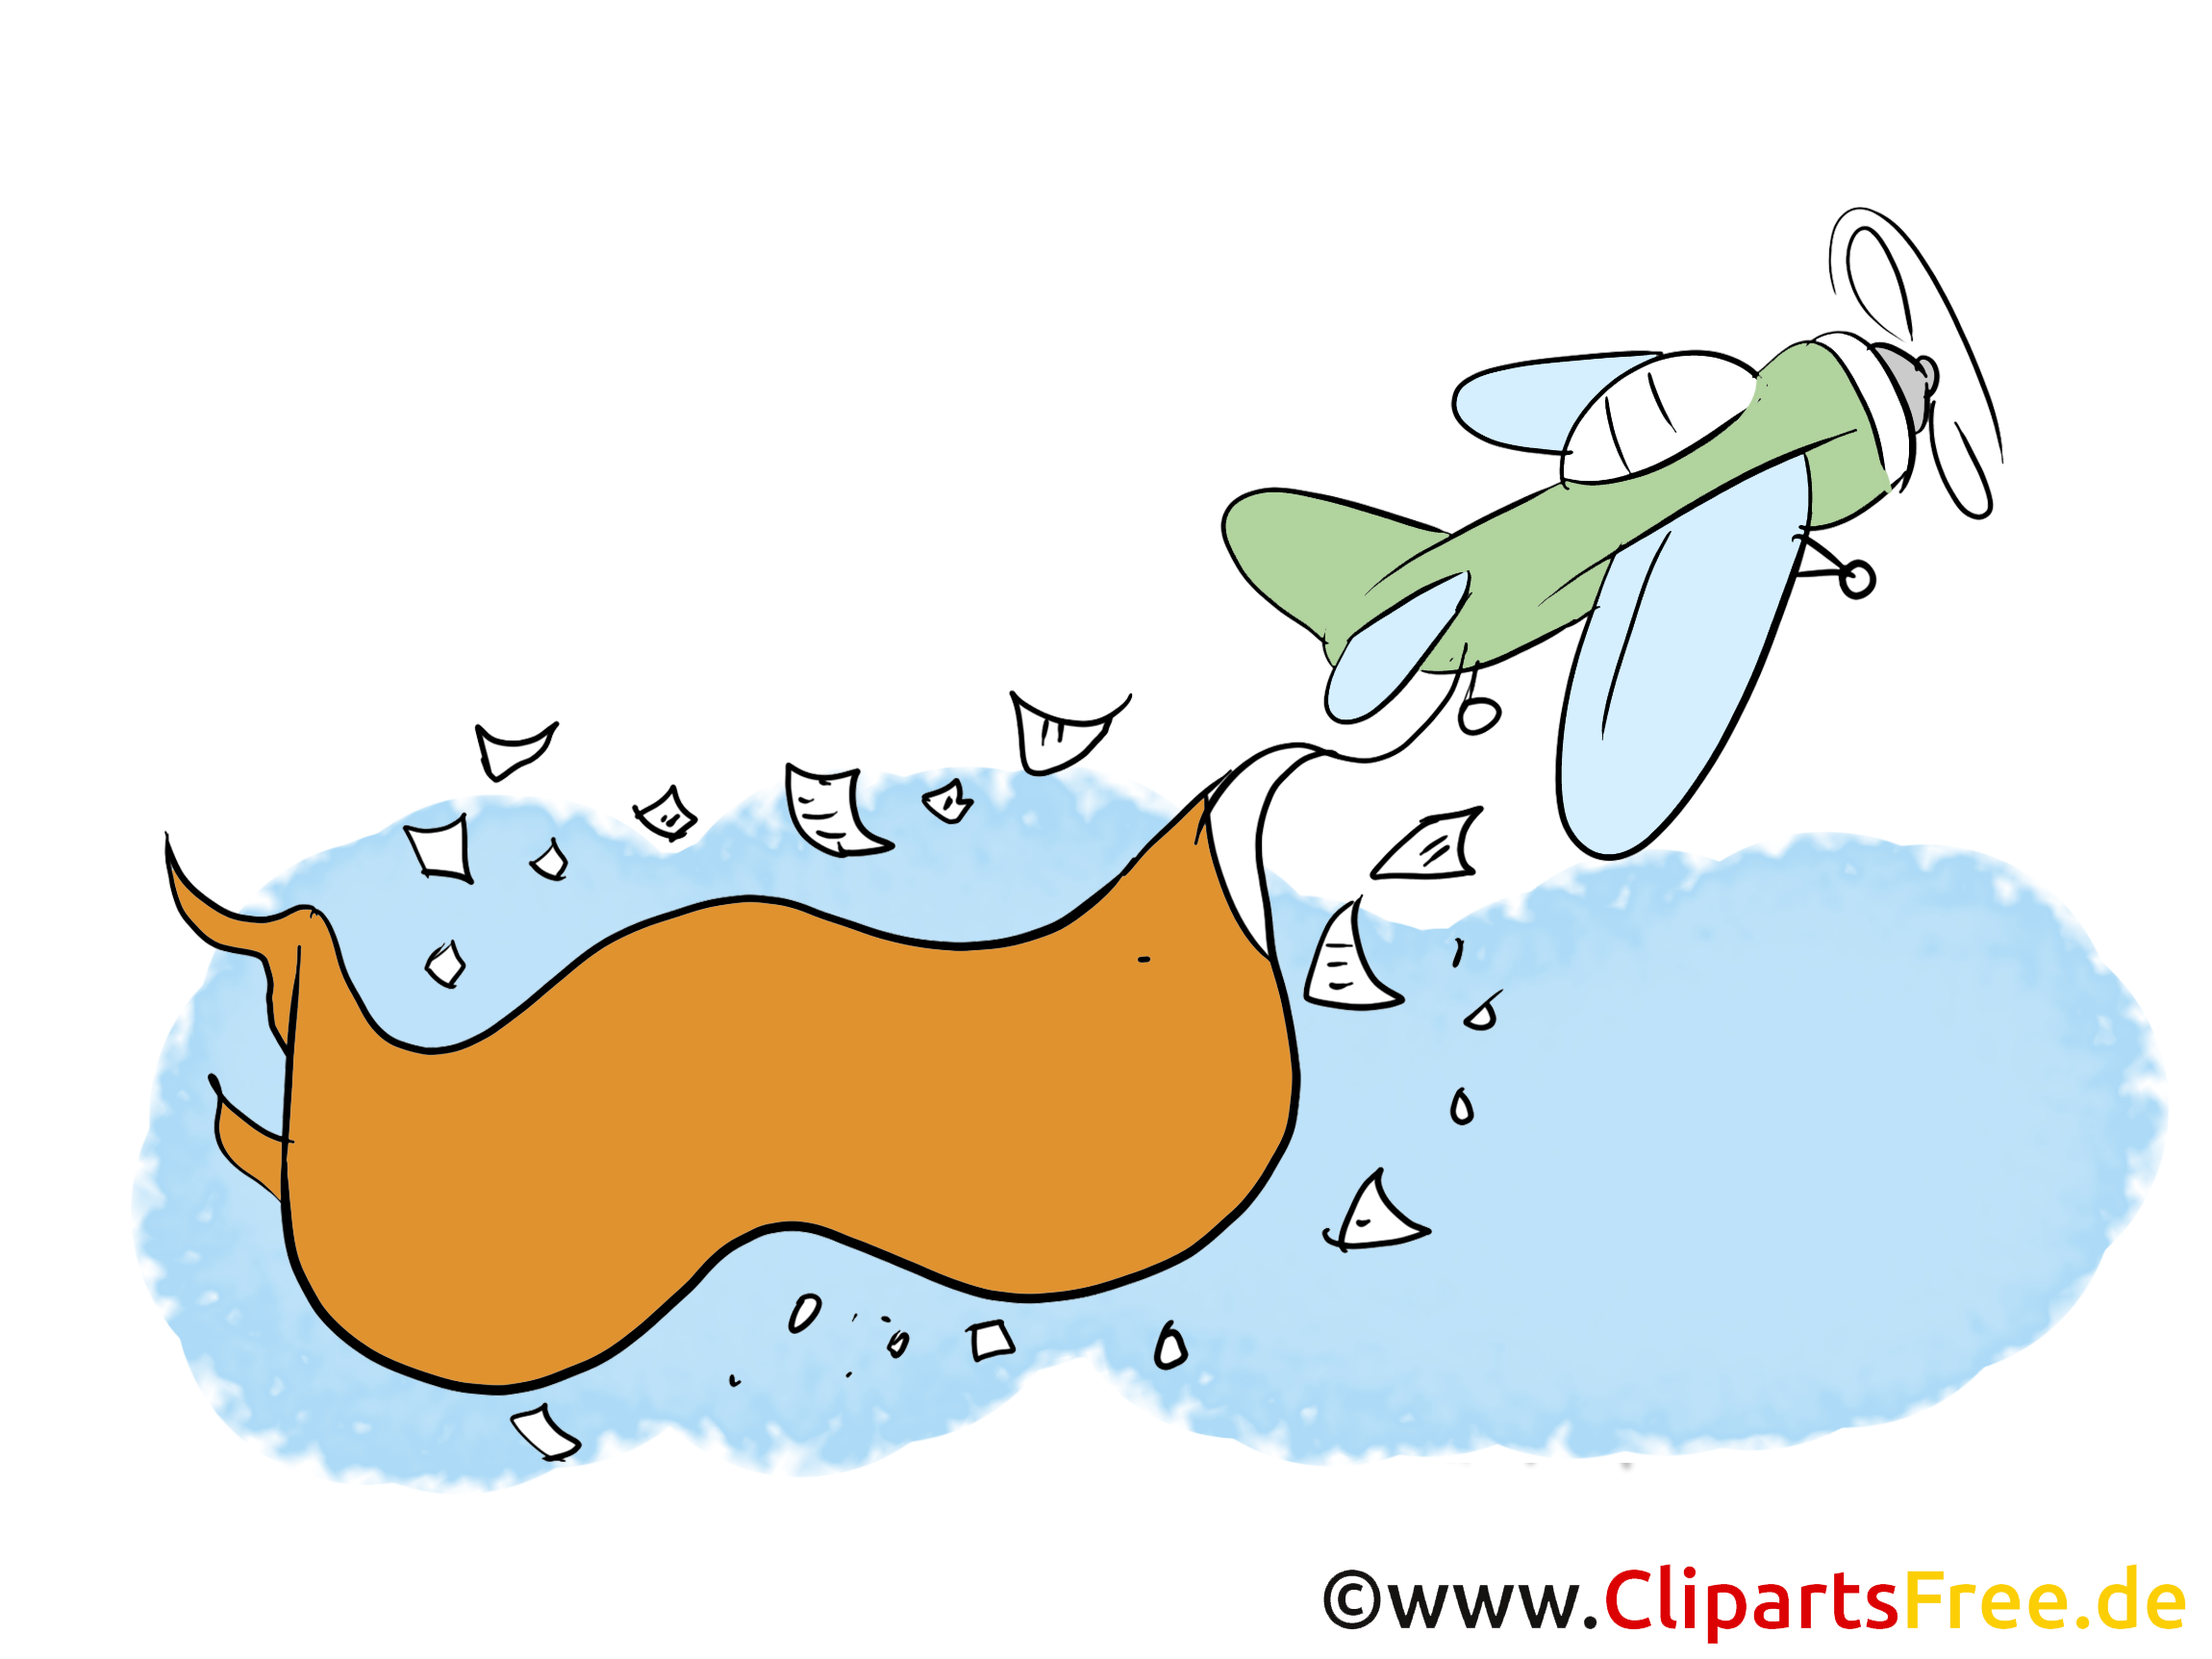 clipart flugzeug mit banner kostenlos - photo #1